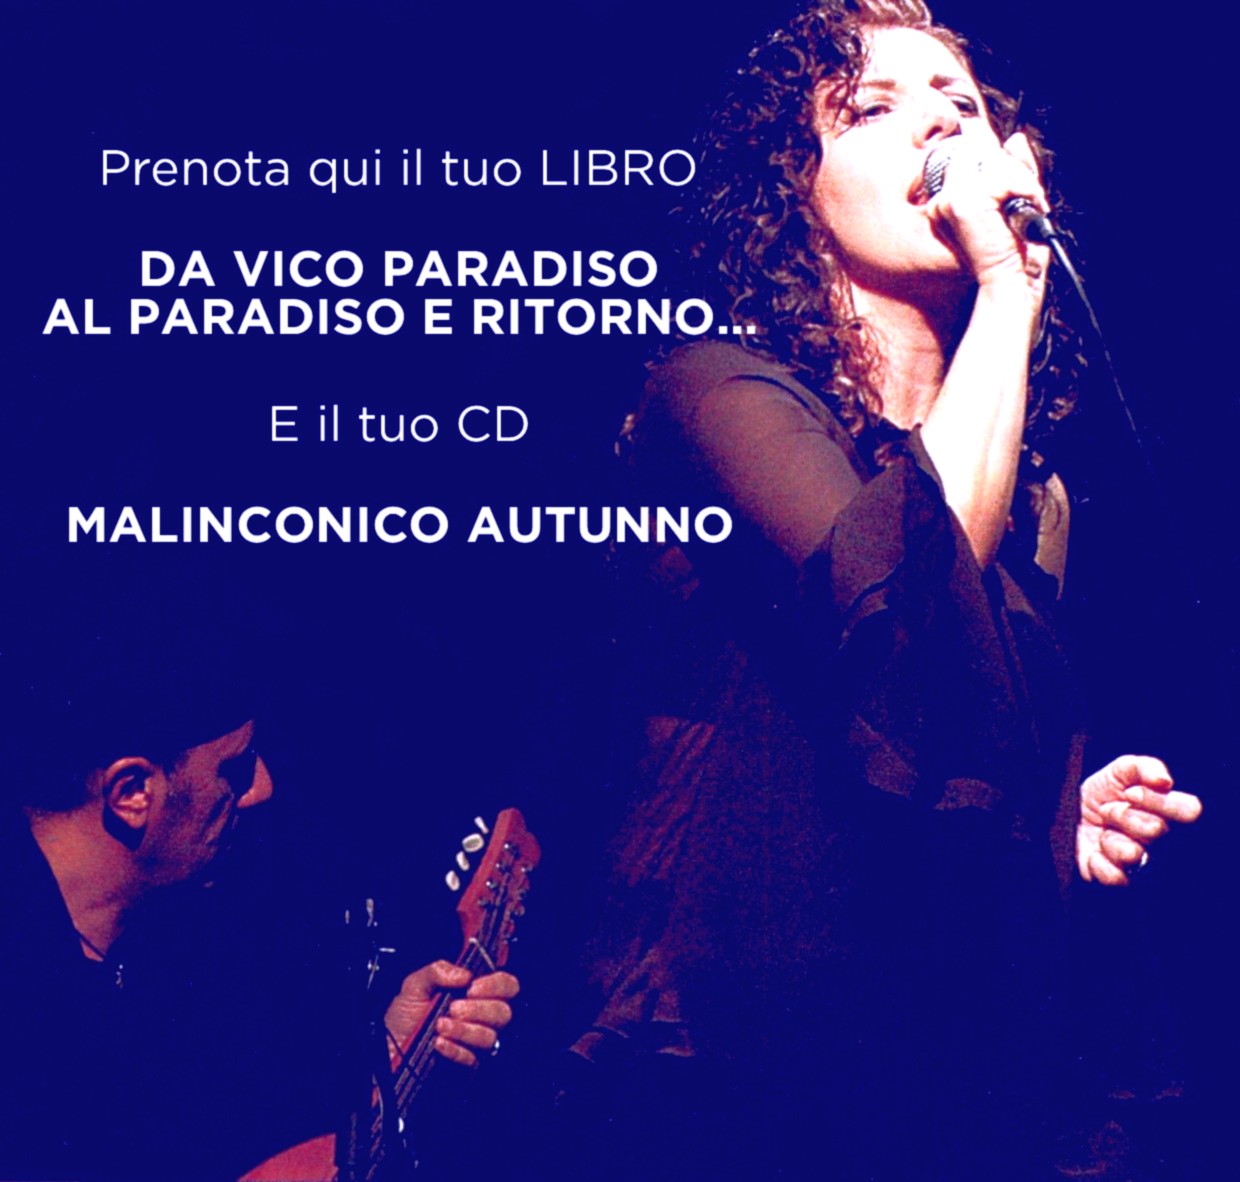 CD - Malinconico autunno